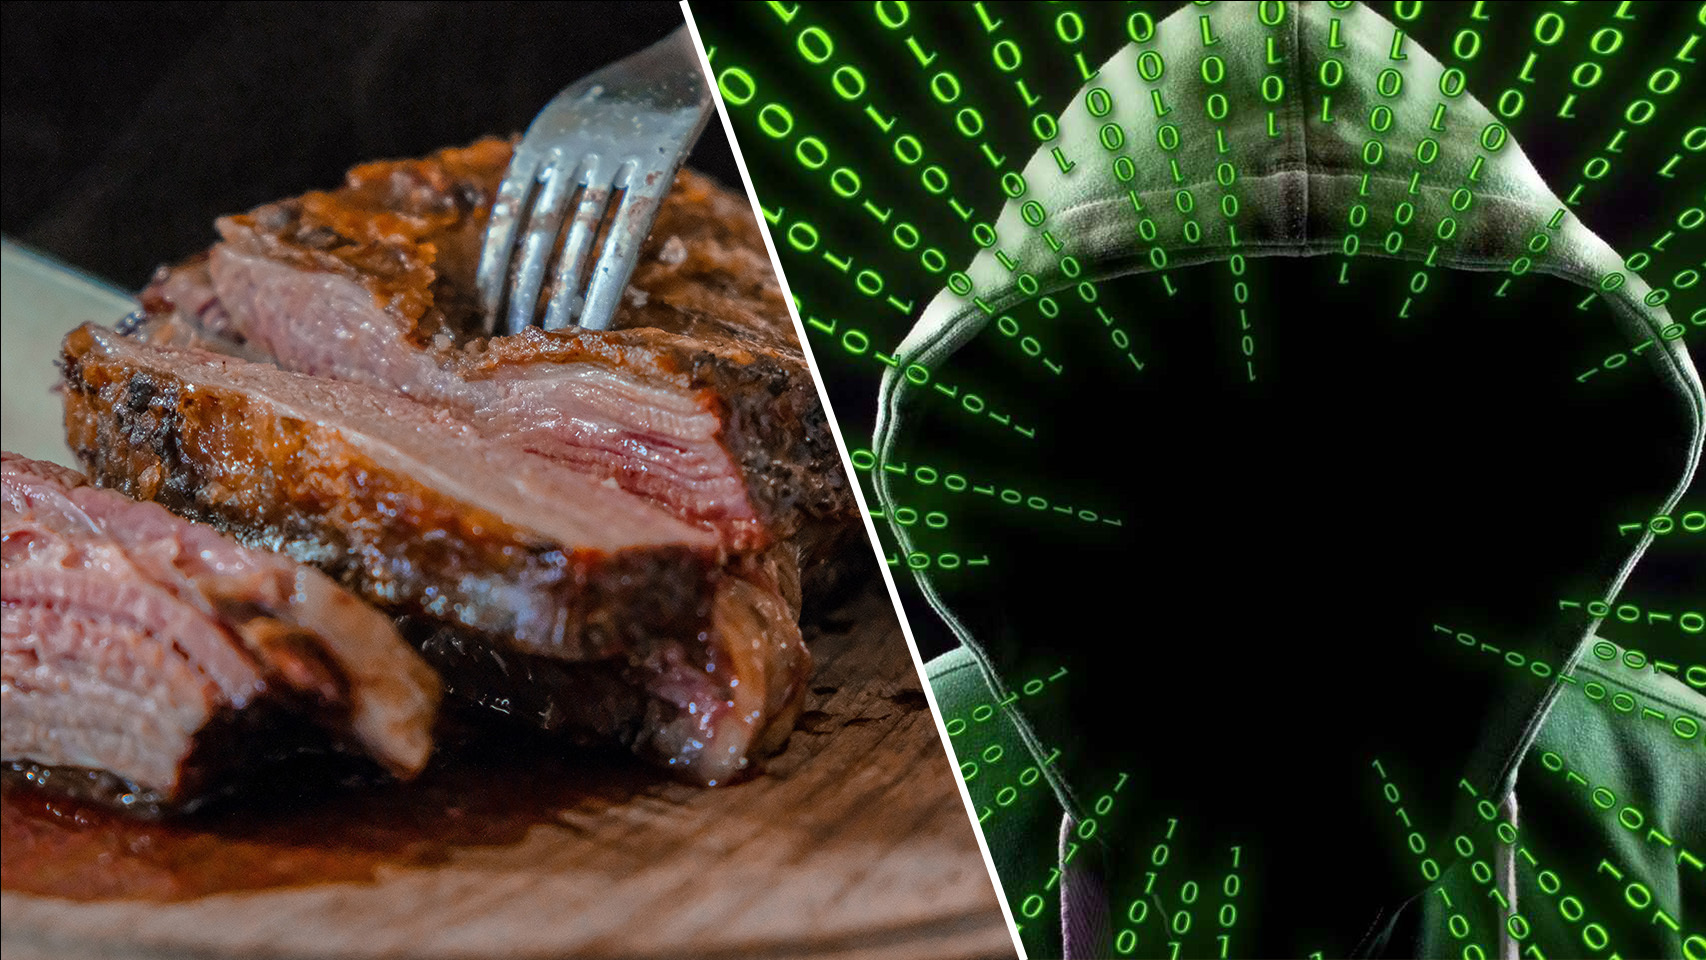 Fotomontaje entre la ilustración de un hacker y un pedazo de carne.